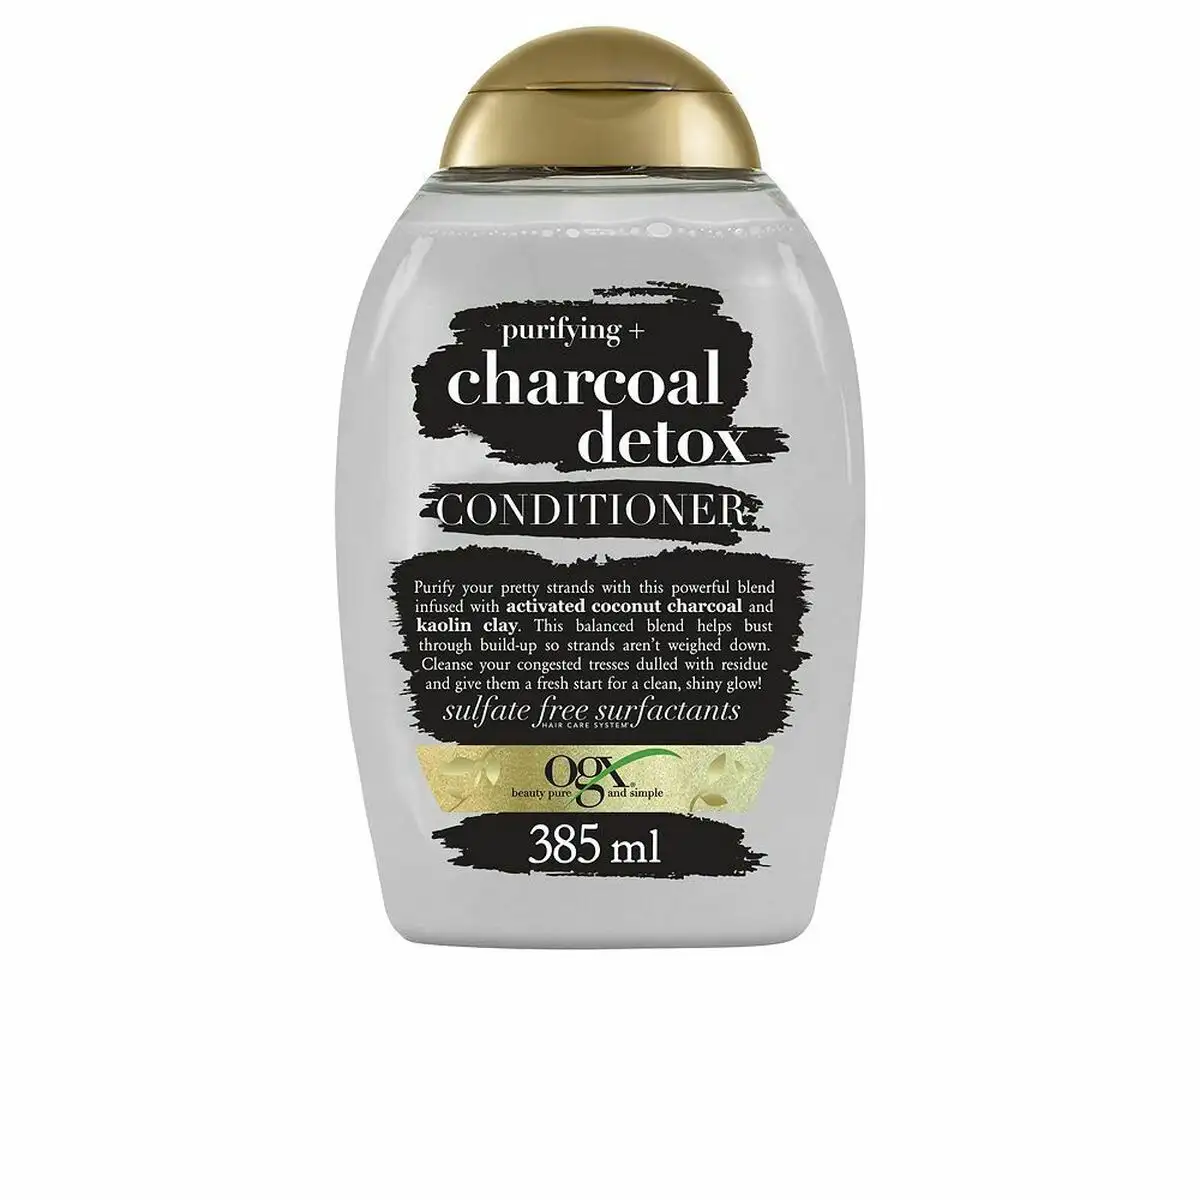 Apres shampooing ogx charcoal detox exfoliant purifiant charbon actif 385 ml_3846. DIAYTAR SENEGAL - Où Choisir Devient une Découverte. Explorez notre boutique en ligne et trouvez des articles qui vous surprennent et vous ravissent à chaque clic.